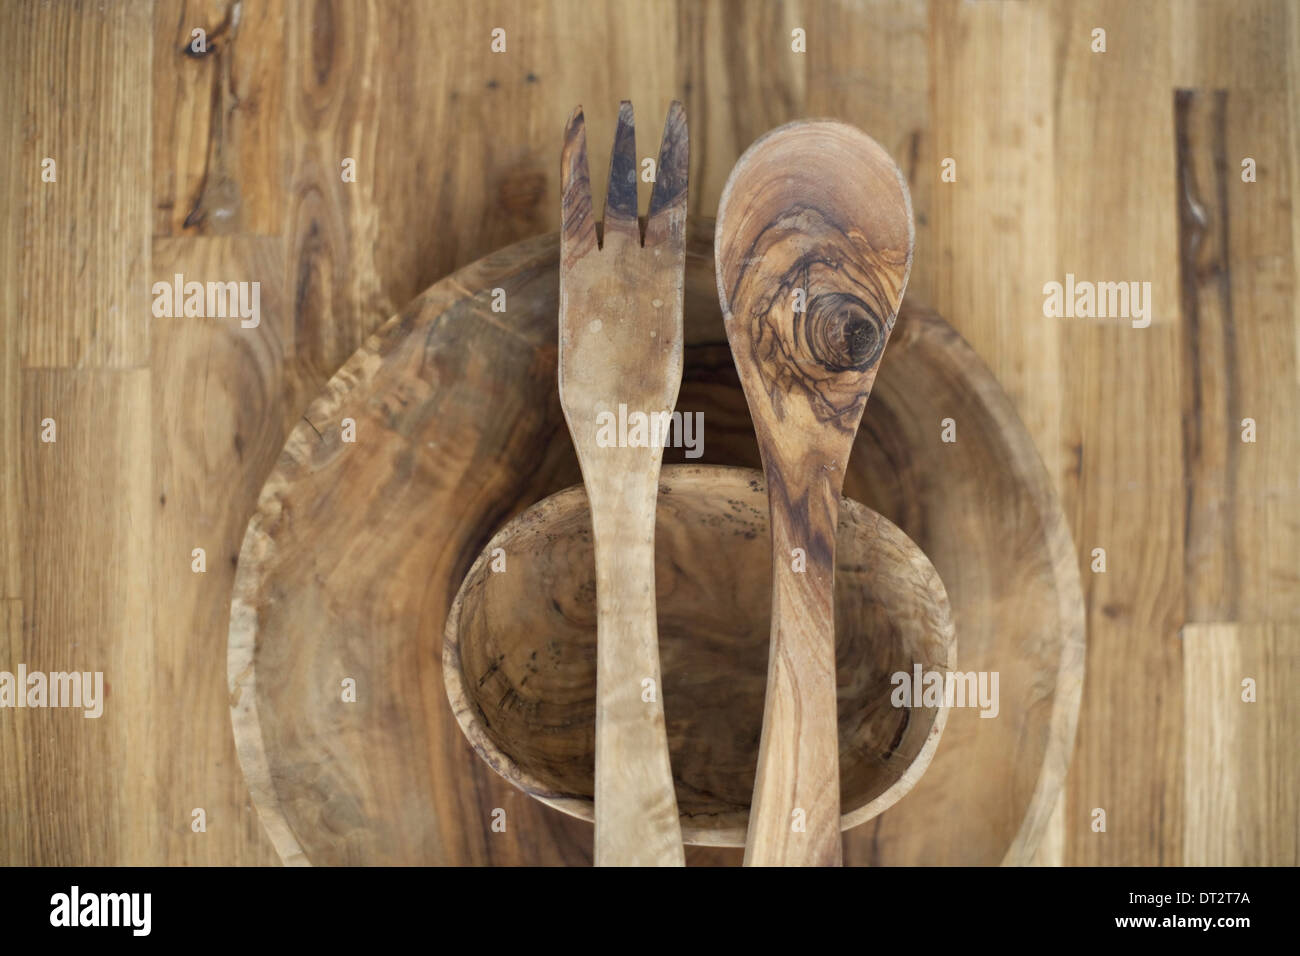 Une table en bois haut avec deux petits bols en bois tourné et deux couverts à salade du grain du bois et des modèles naturels Banque D'Images